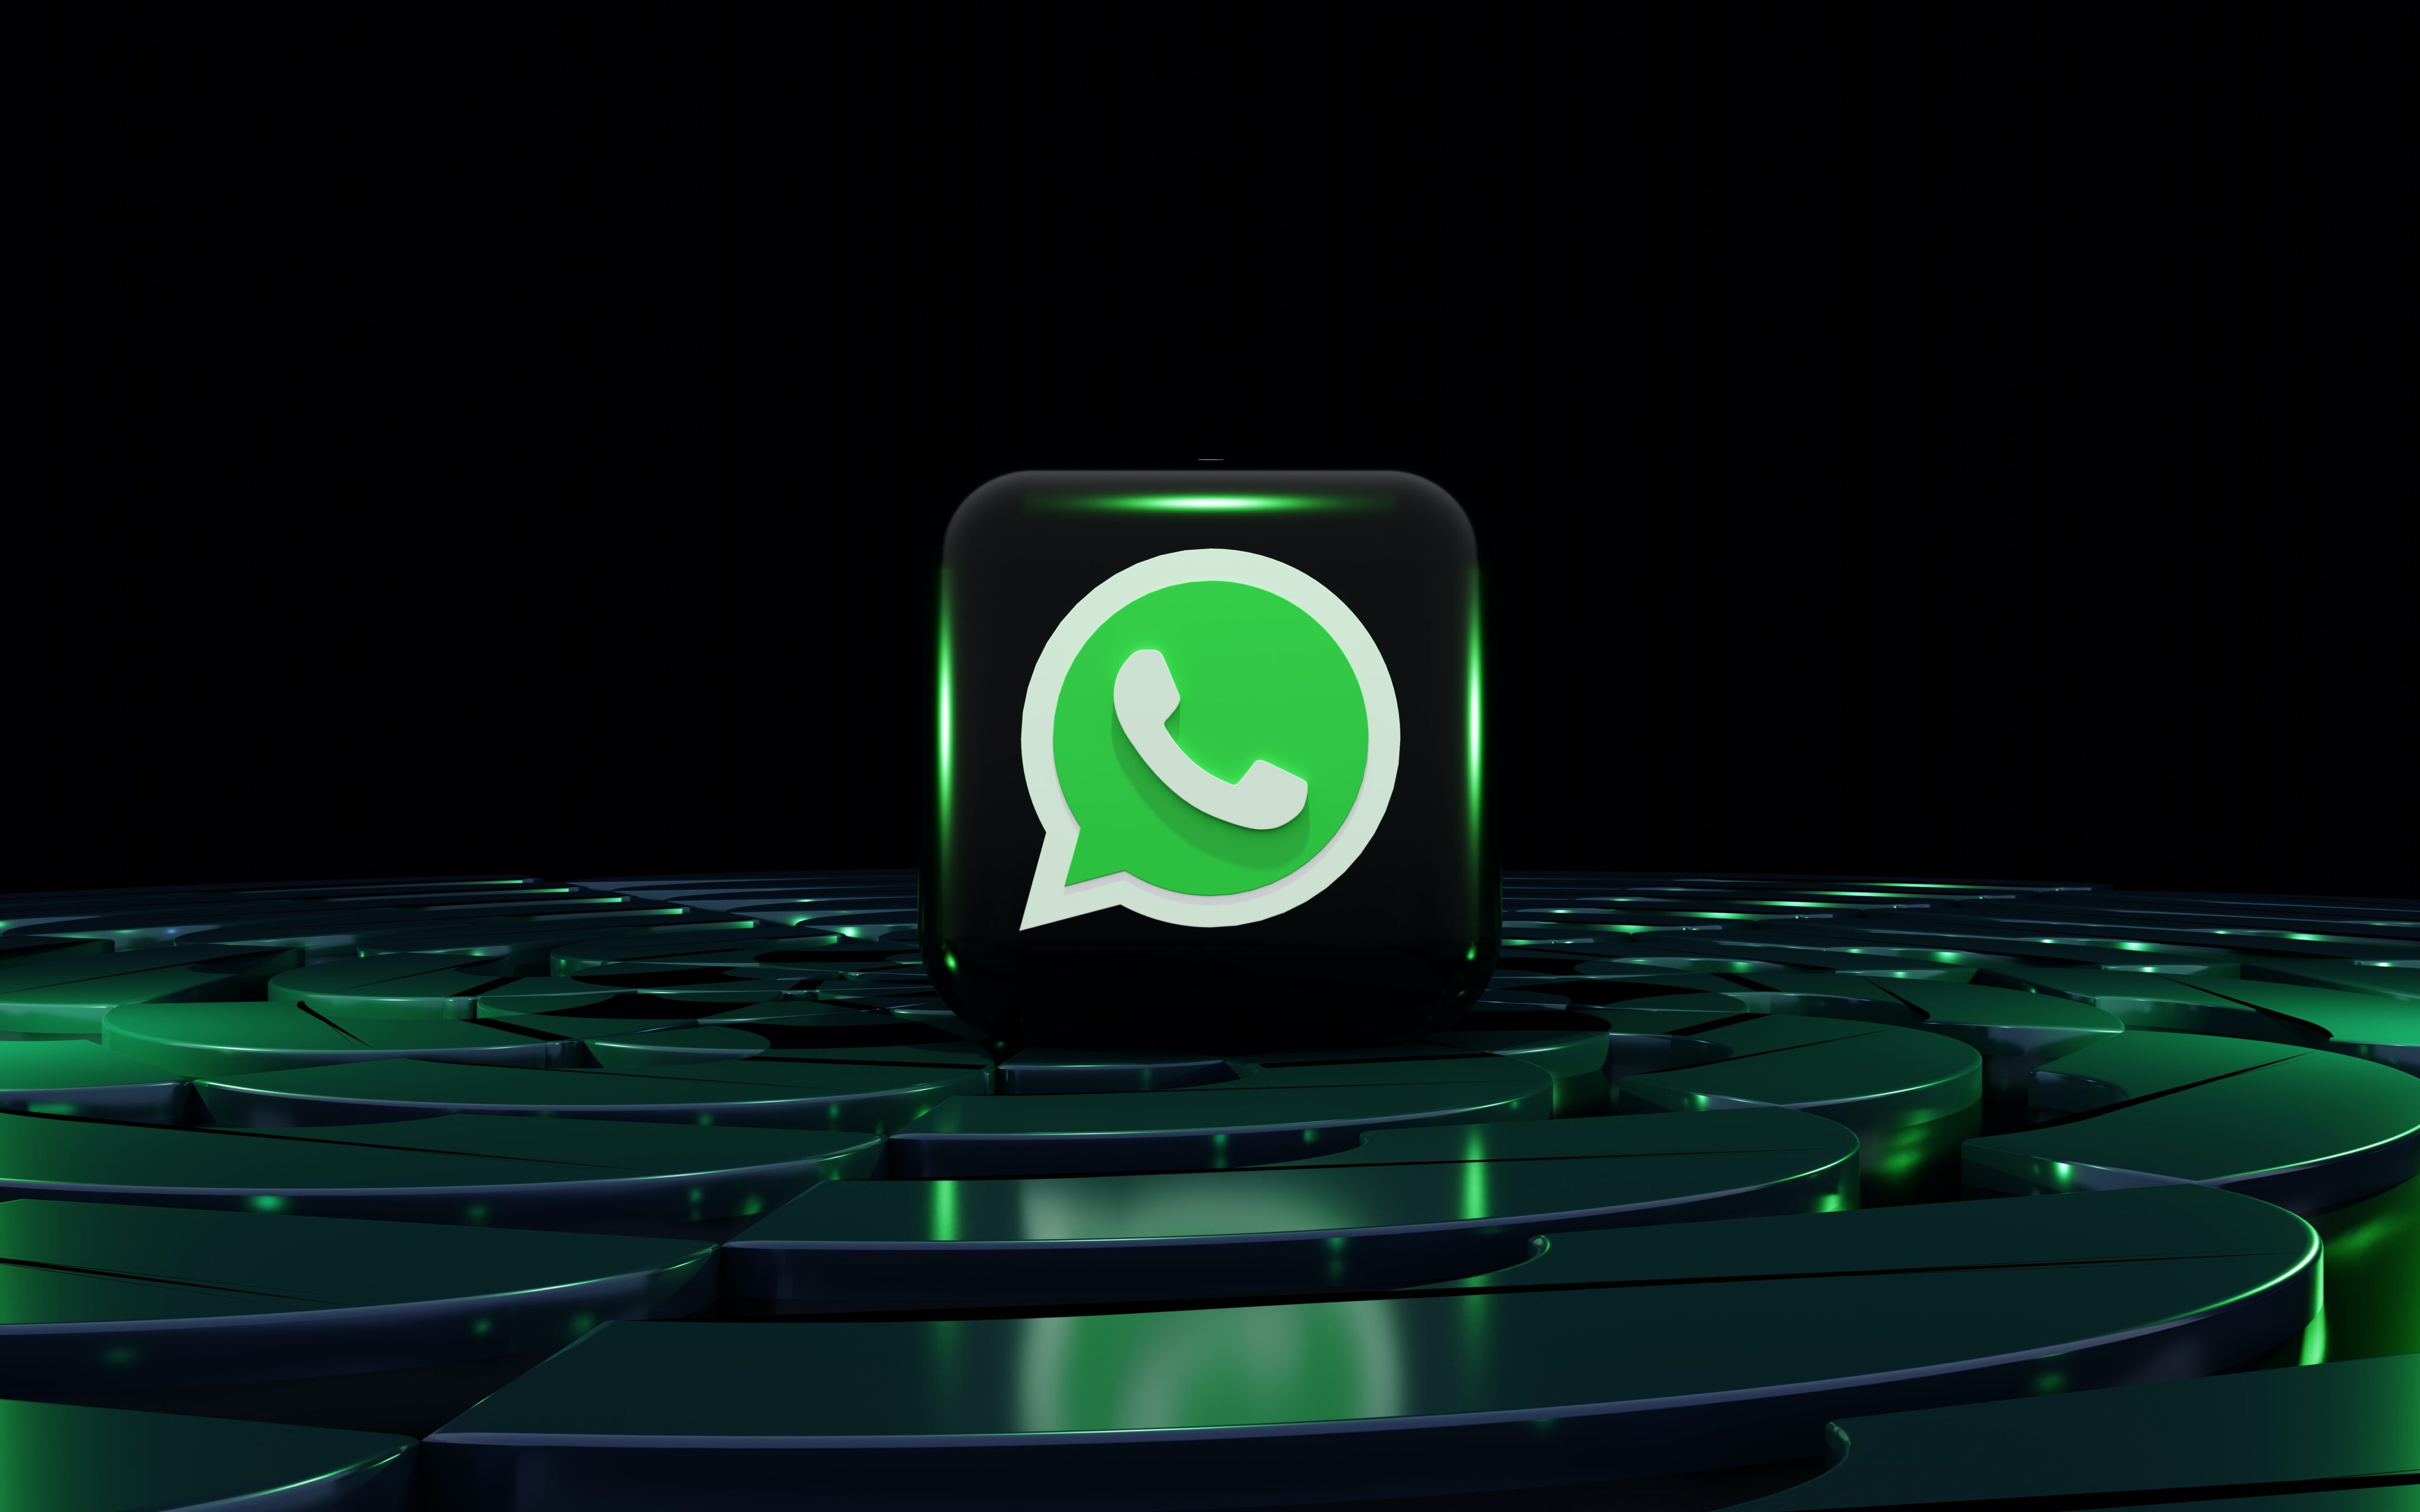 O que fazer quando o código do WhatsApp não chega? – Tecnoblog